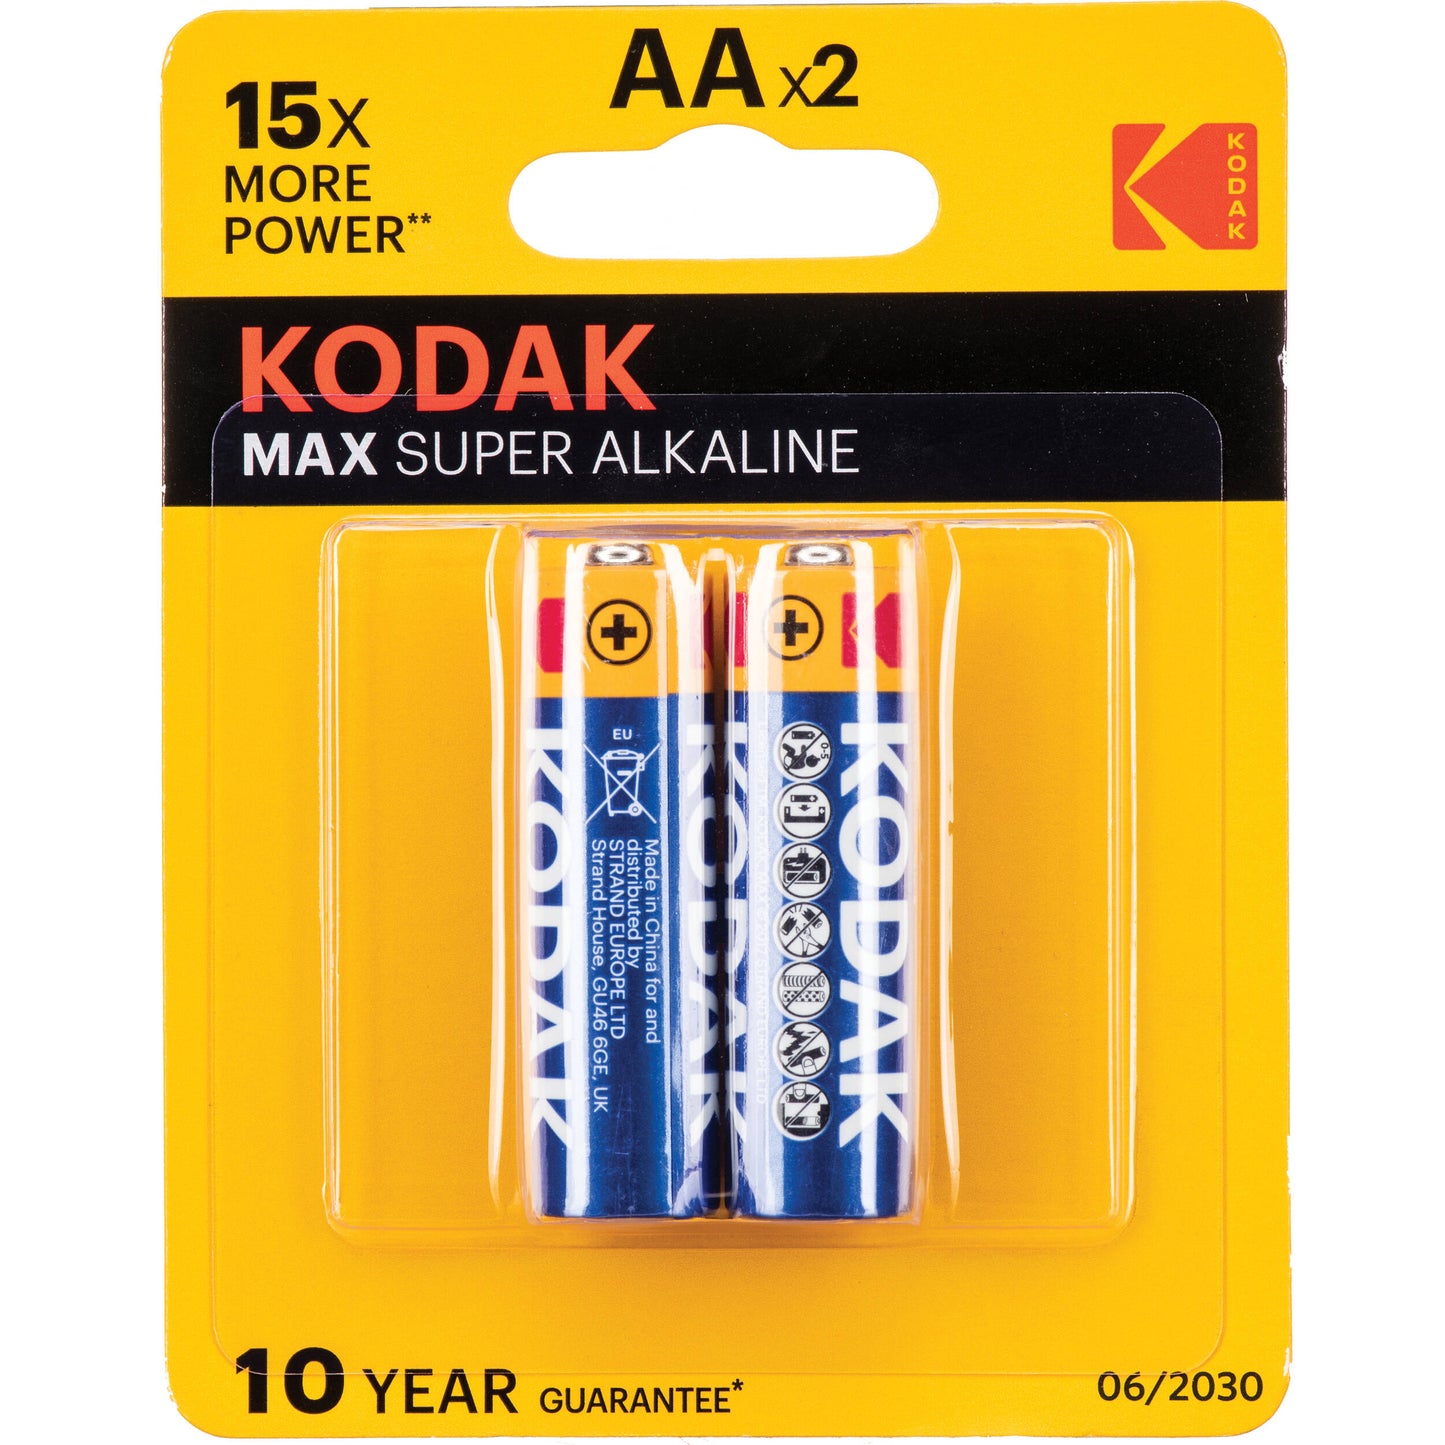 Kodak Max Super Alkaline Batteries AAx2